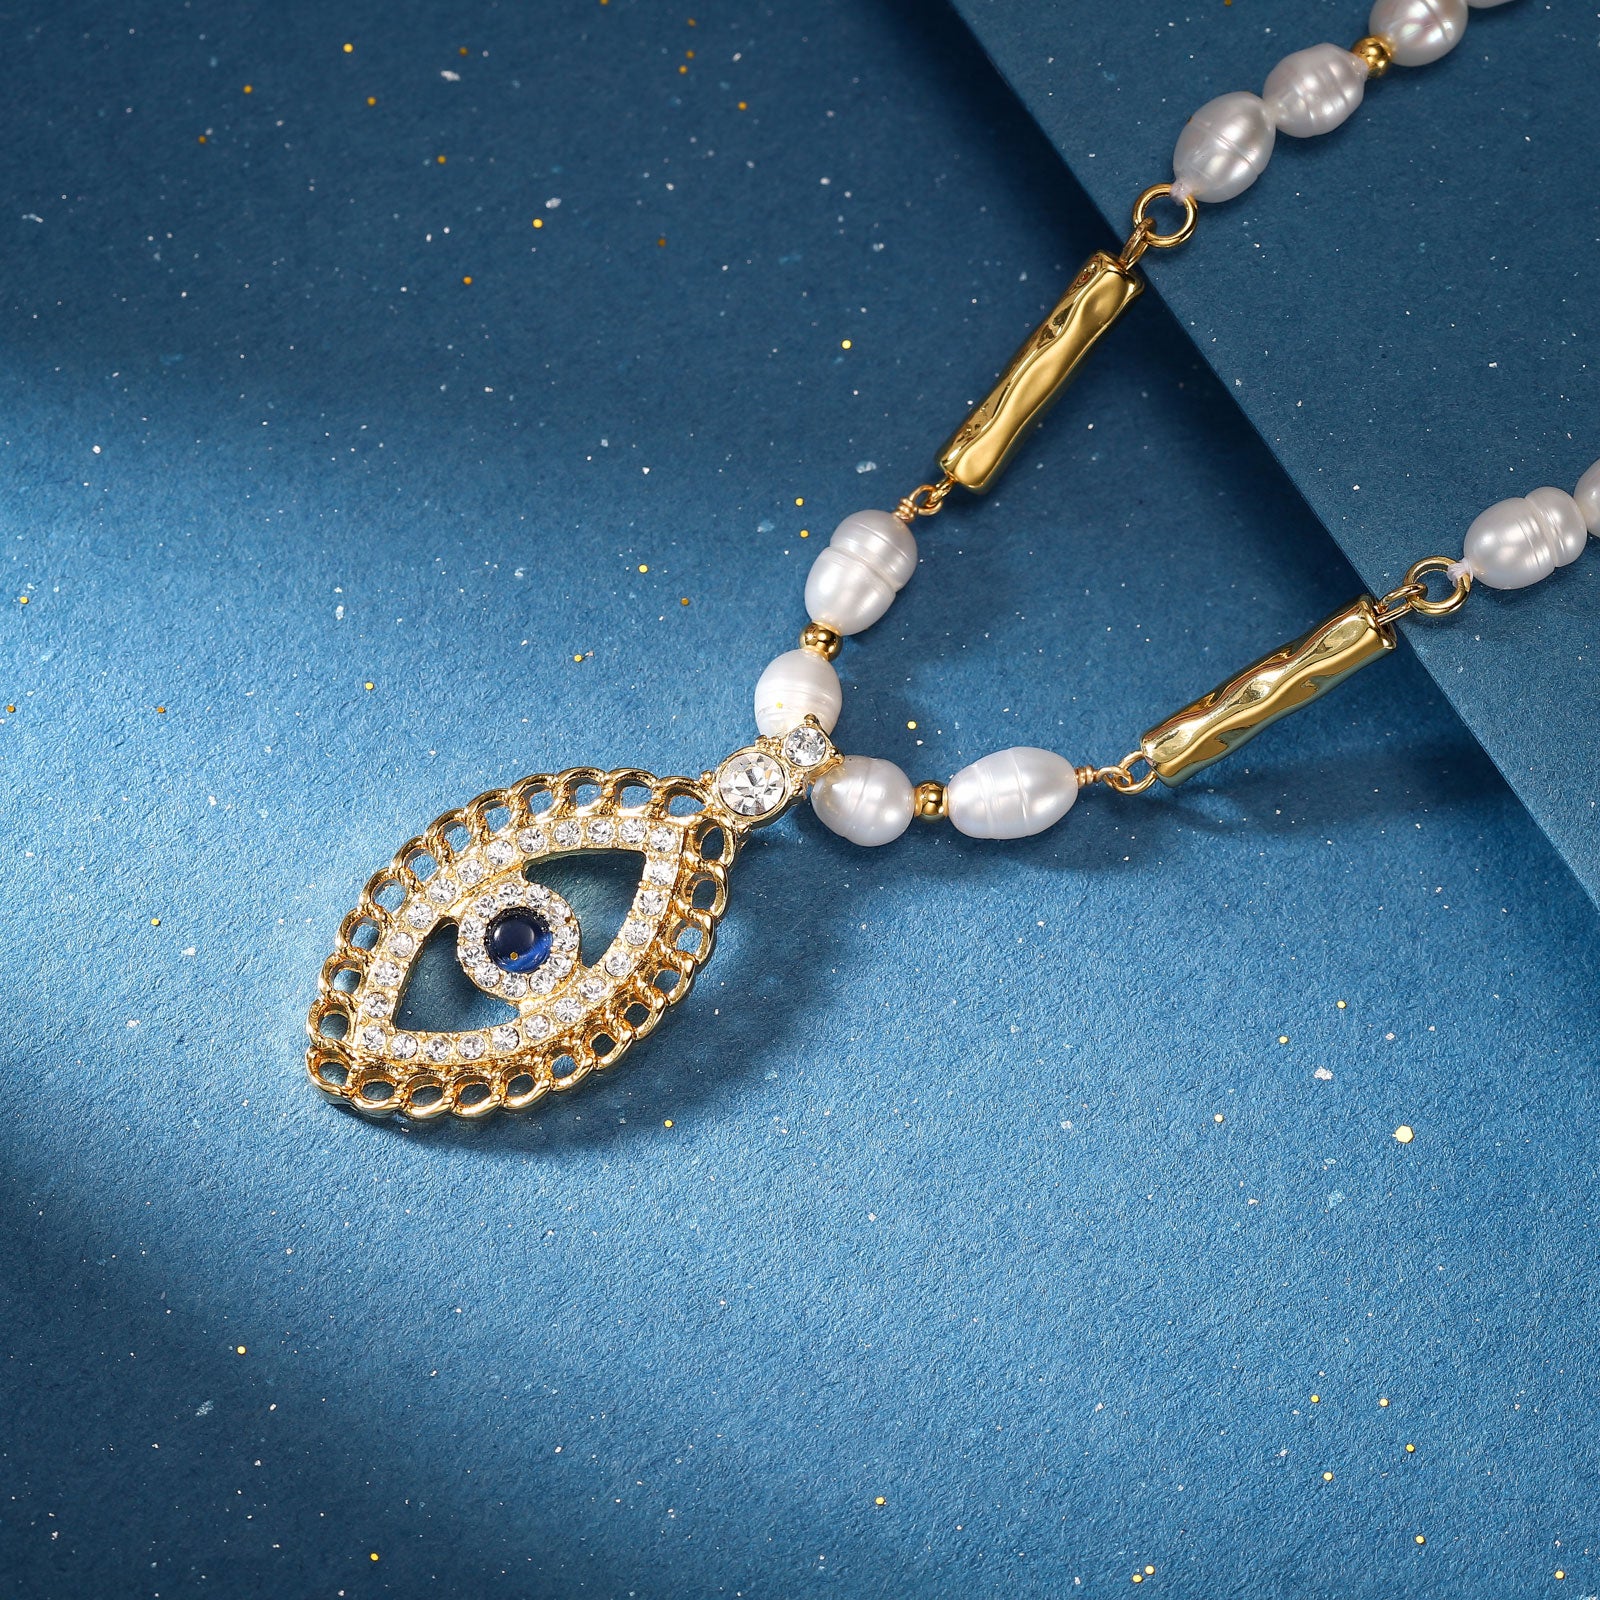 Oval Evil Eye Gold Pendant Necklace